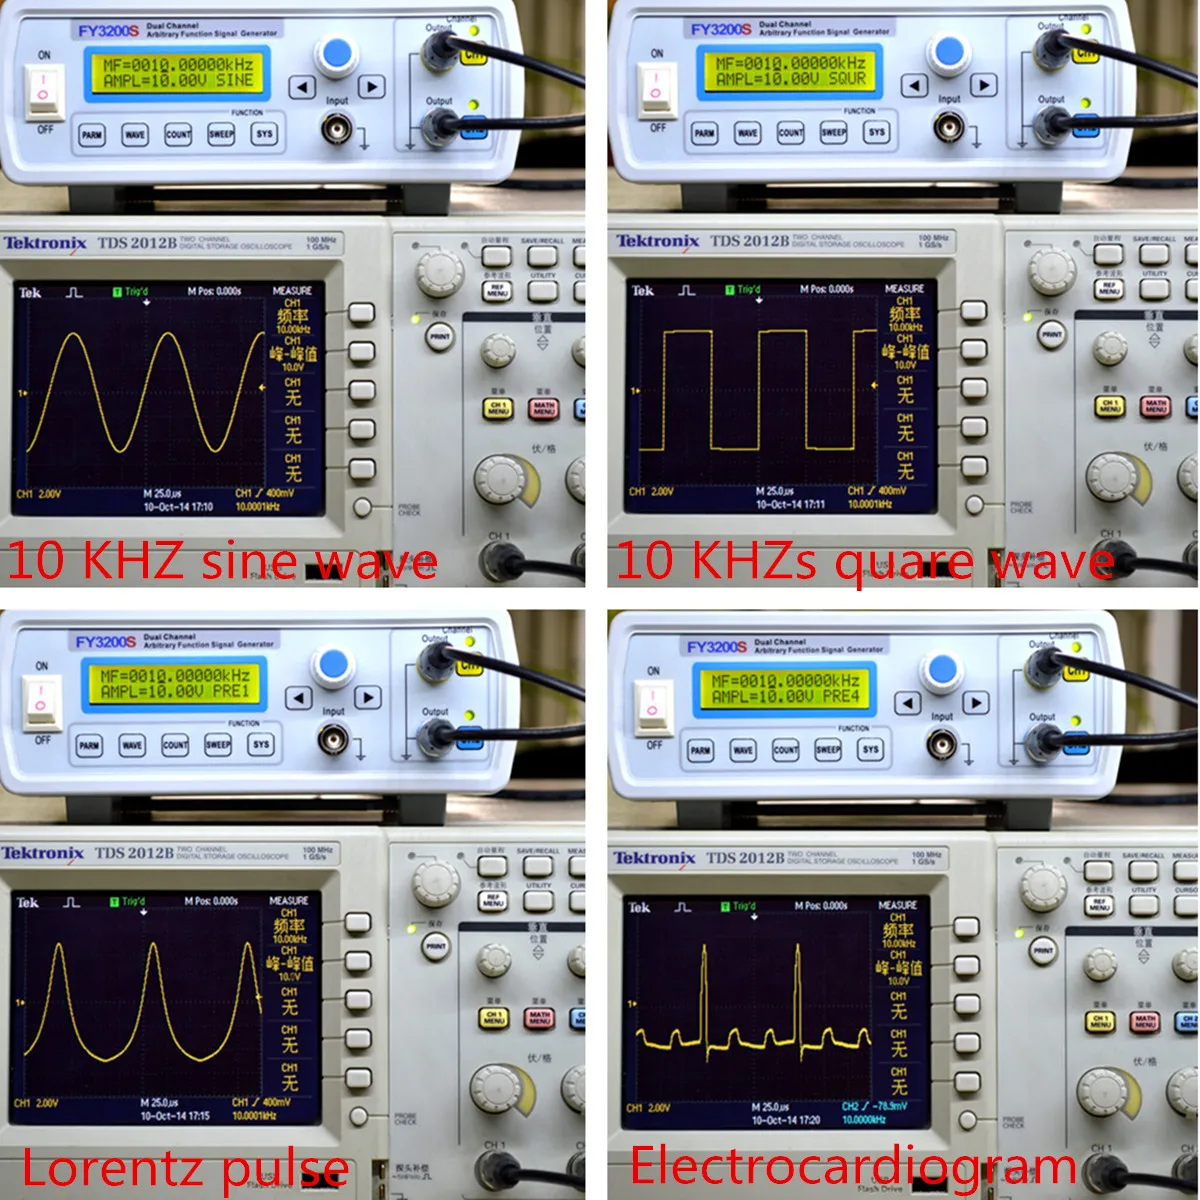 24 МГц двухканальный генератор сигналов произвольной формы DDS функция генератор сигналов Синусоидальная квадратная волна развертки счетчик сигнала/частота импульса Mete